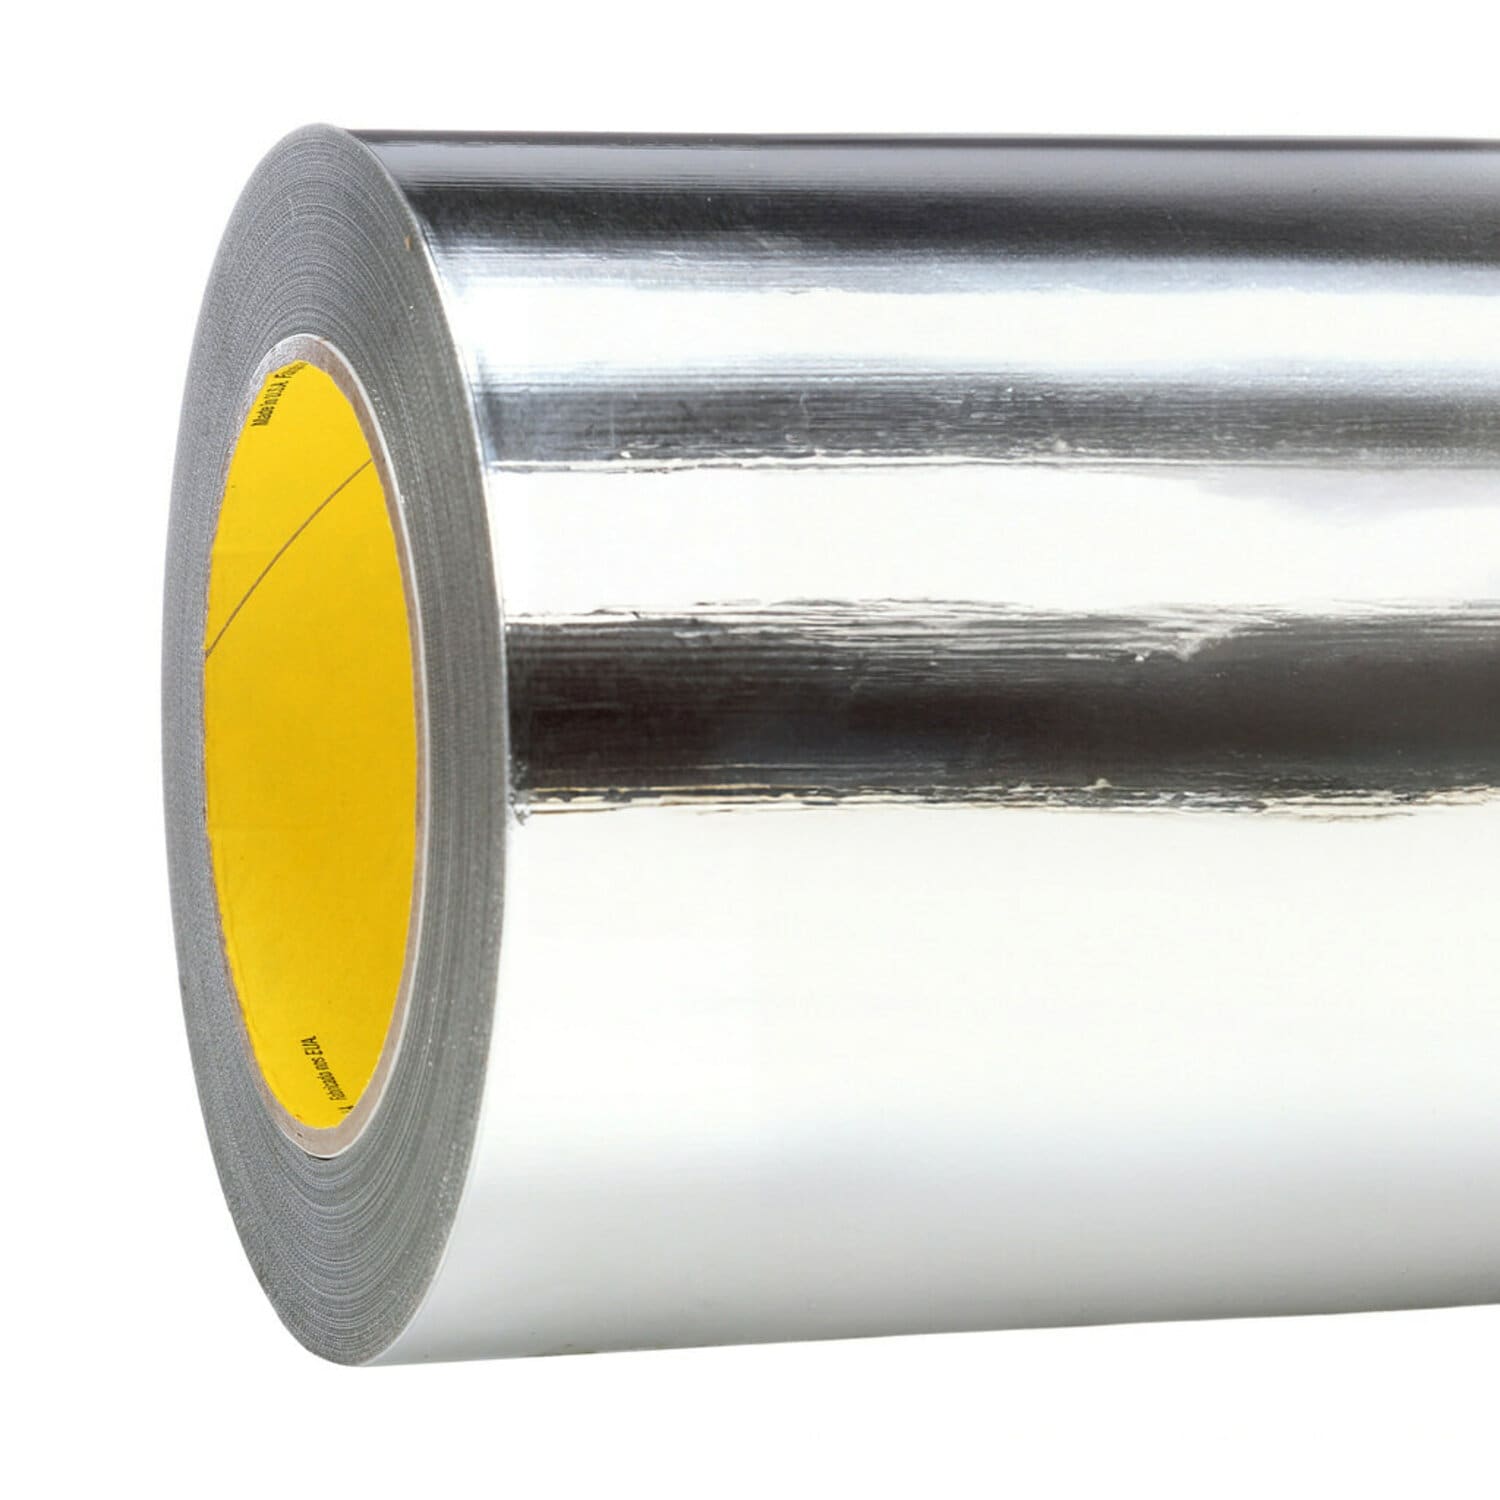 7010314244 - 3M Aluminum Foil Tape 439, Silver, 250 mm x 55 m, 3.1 mil, 1 roll per
case